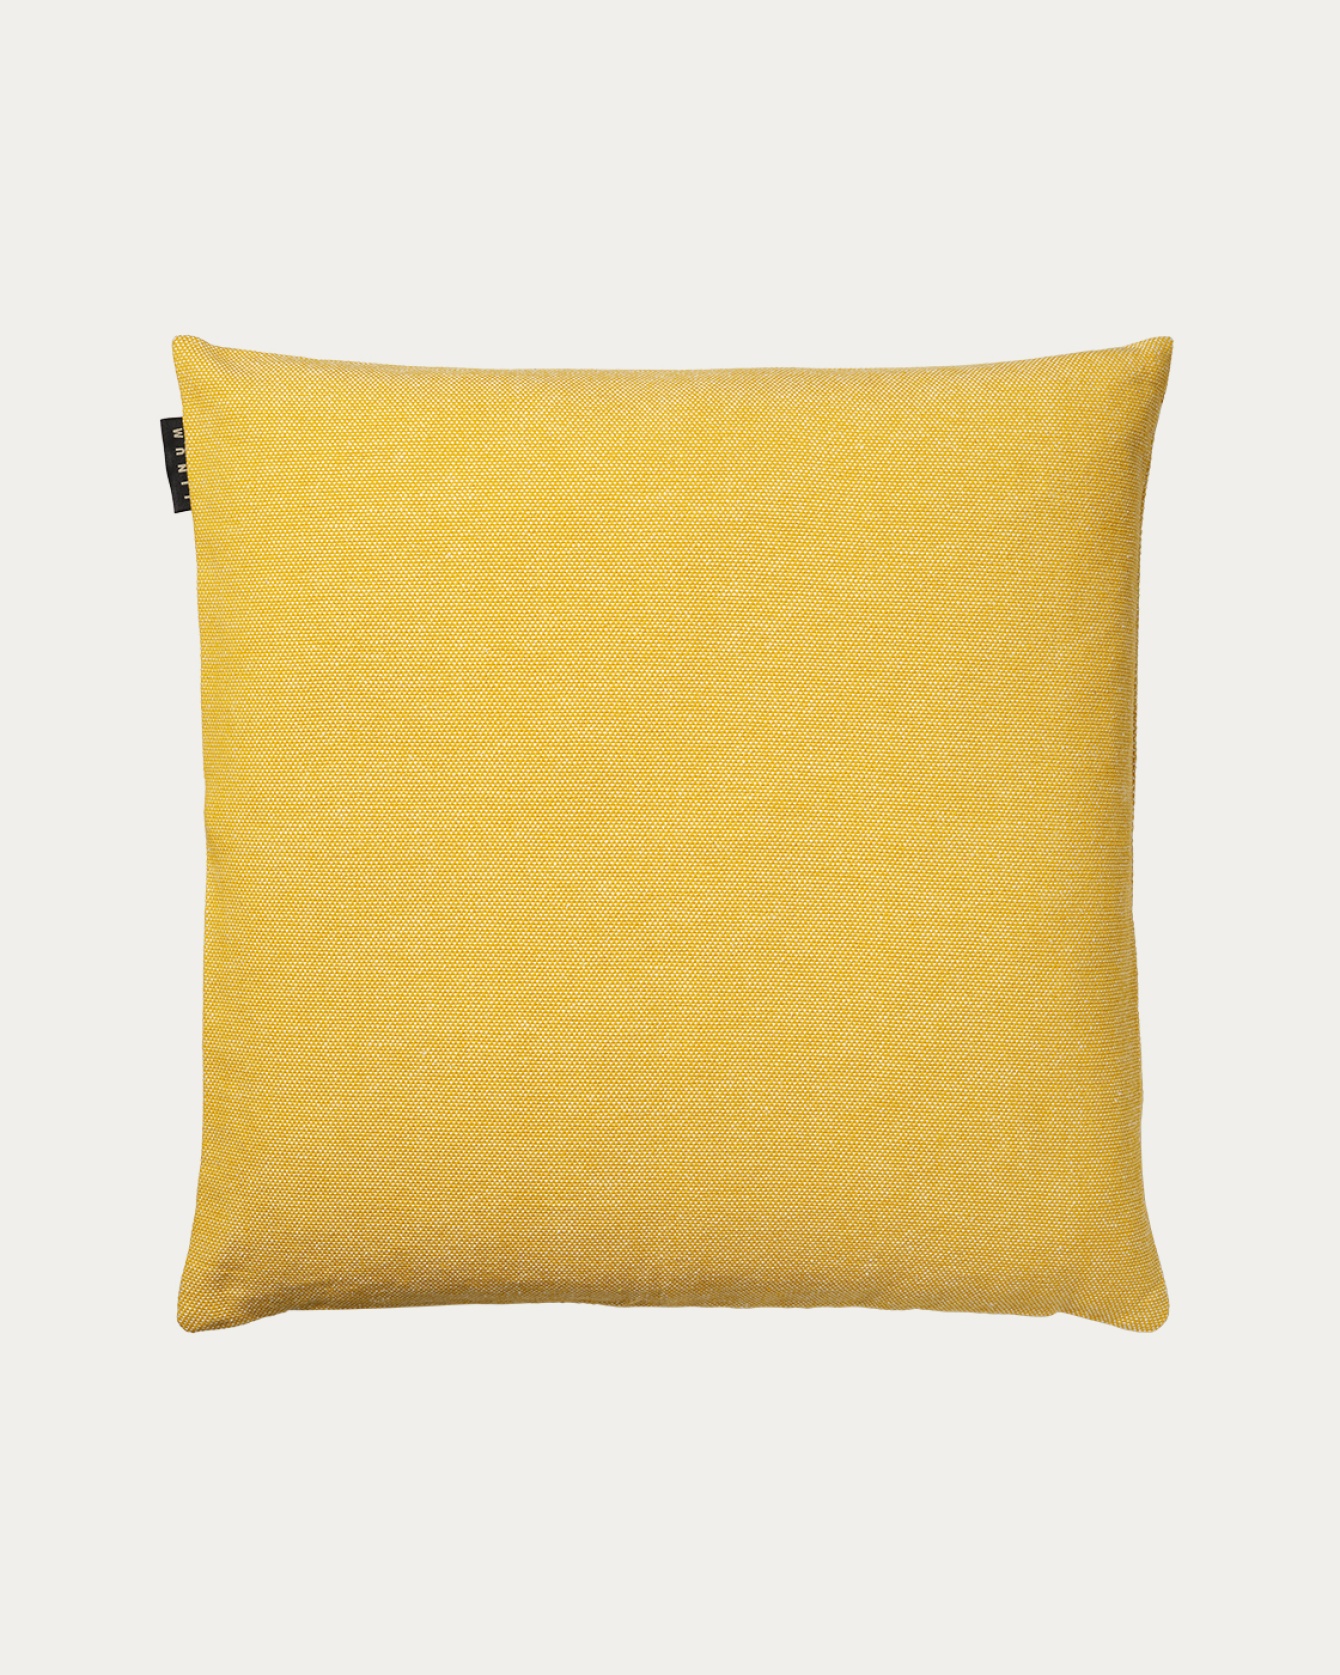 Image du produit housse de coussin PEPPER jaune moutarde en coton doux de LINUM DESIGN. Facile à laver et durable pendant des générations. Taille 50 x 50 cm.